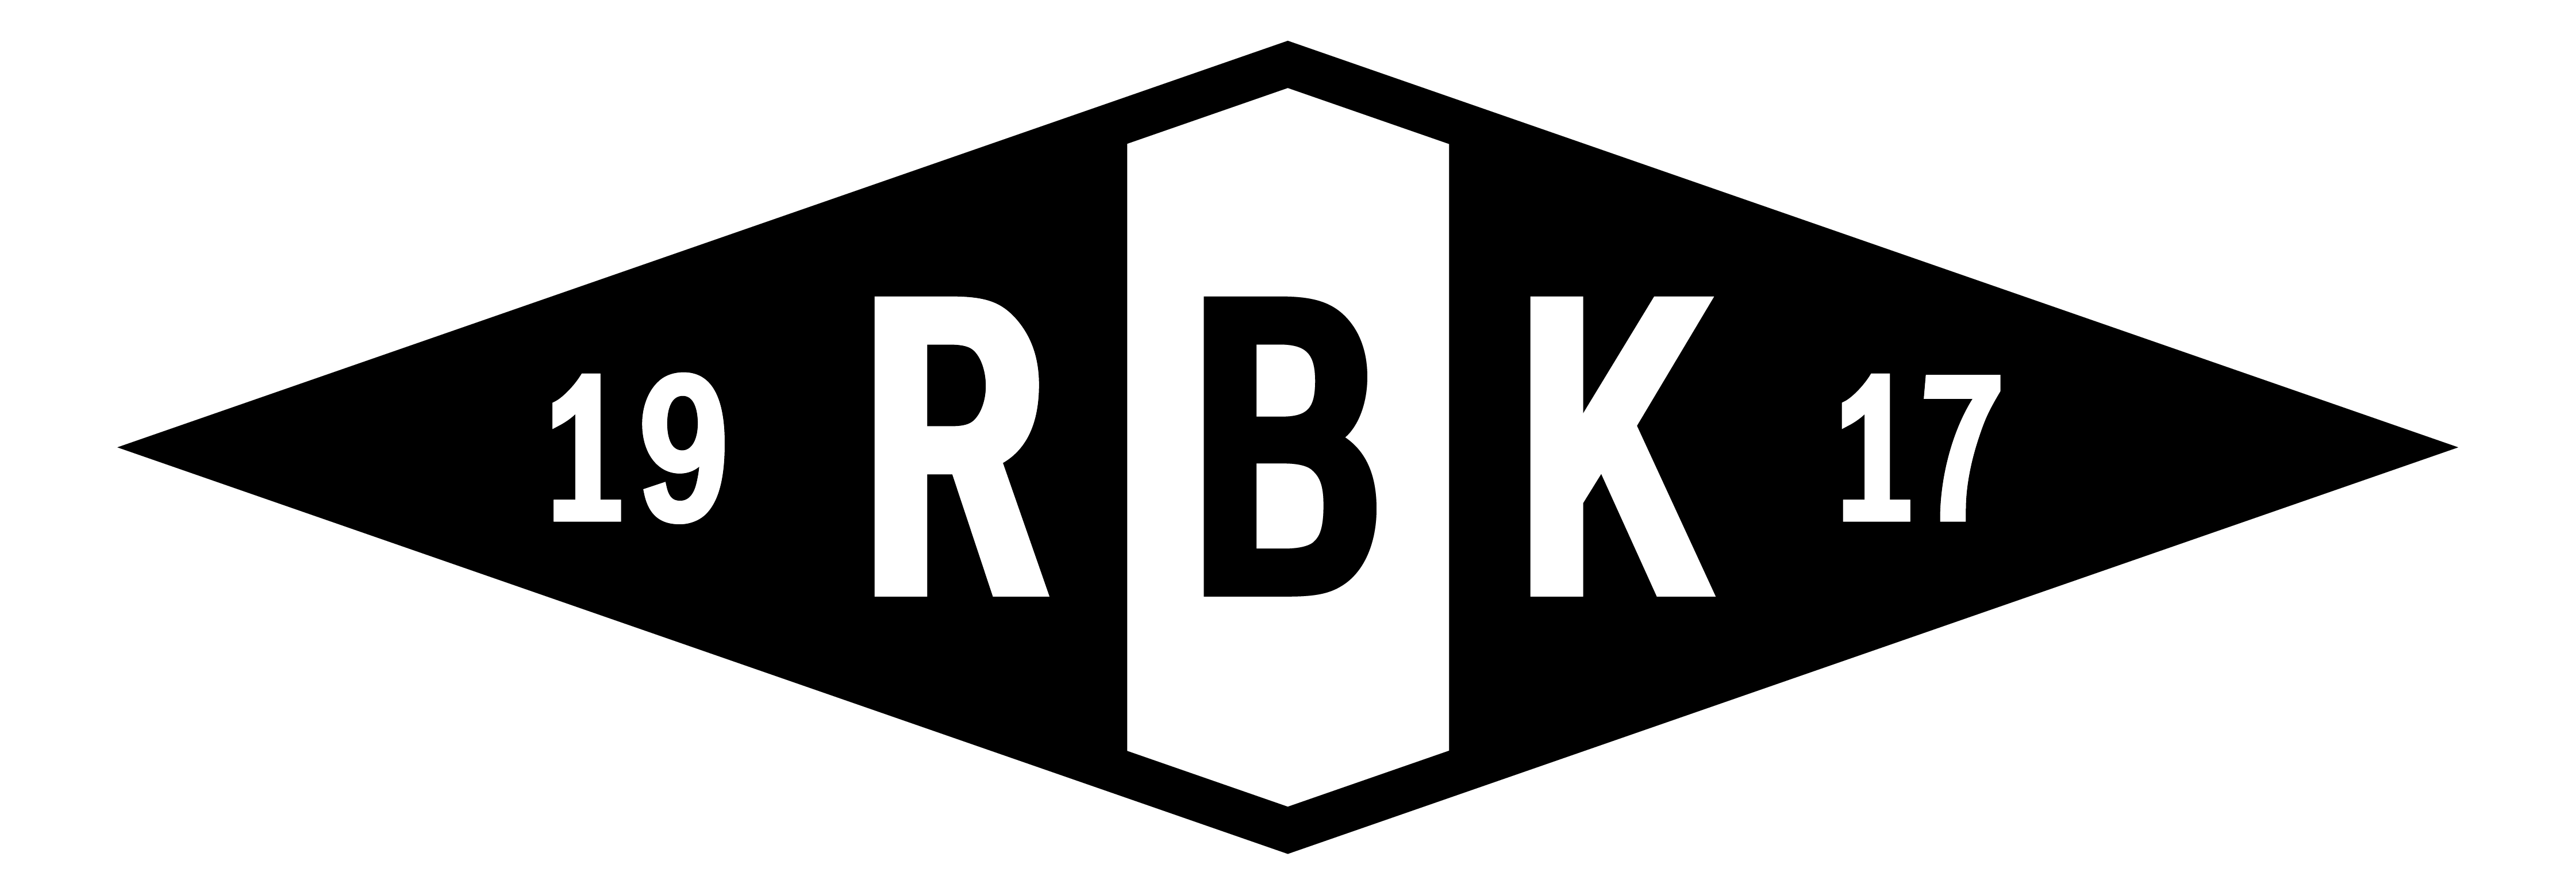 logo rbk